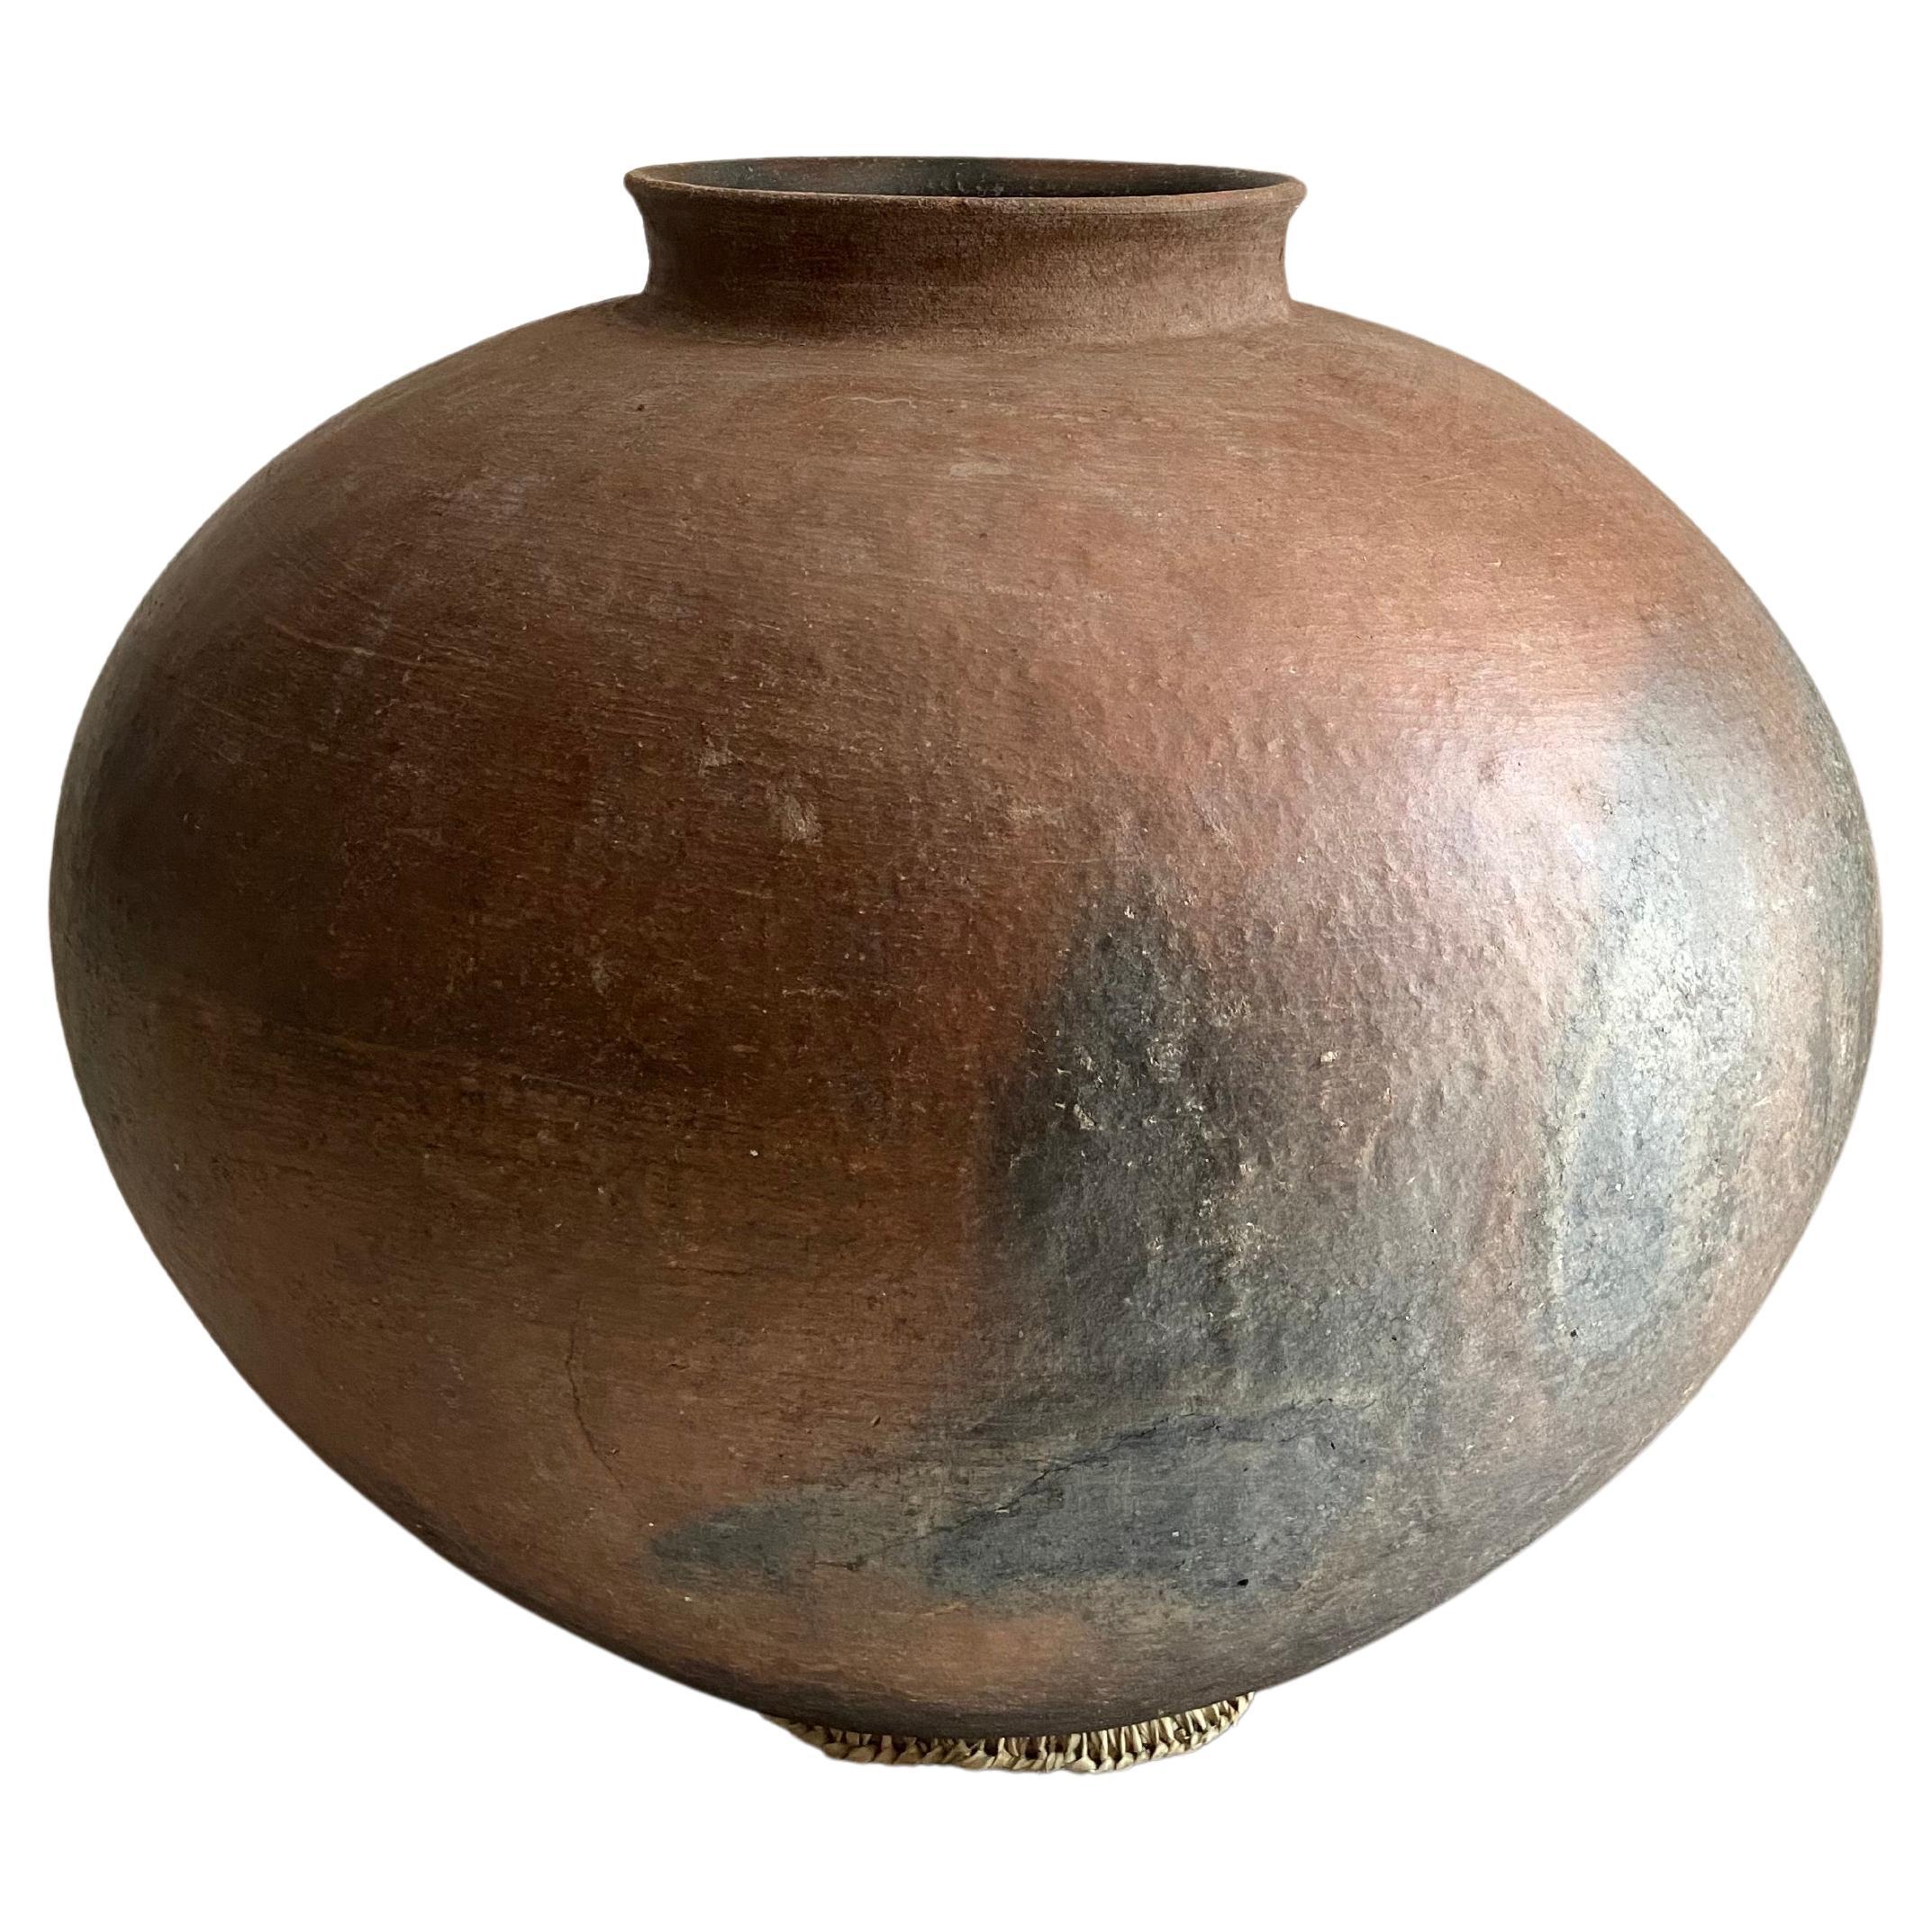 Early 20th Century Terracotta Jar from Mexico's Mixteca Region of Oaxaca